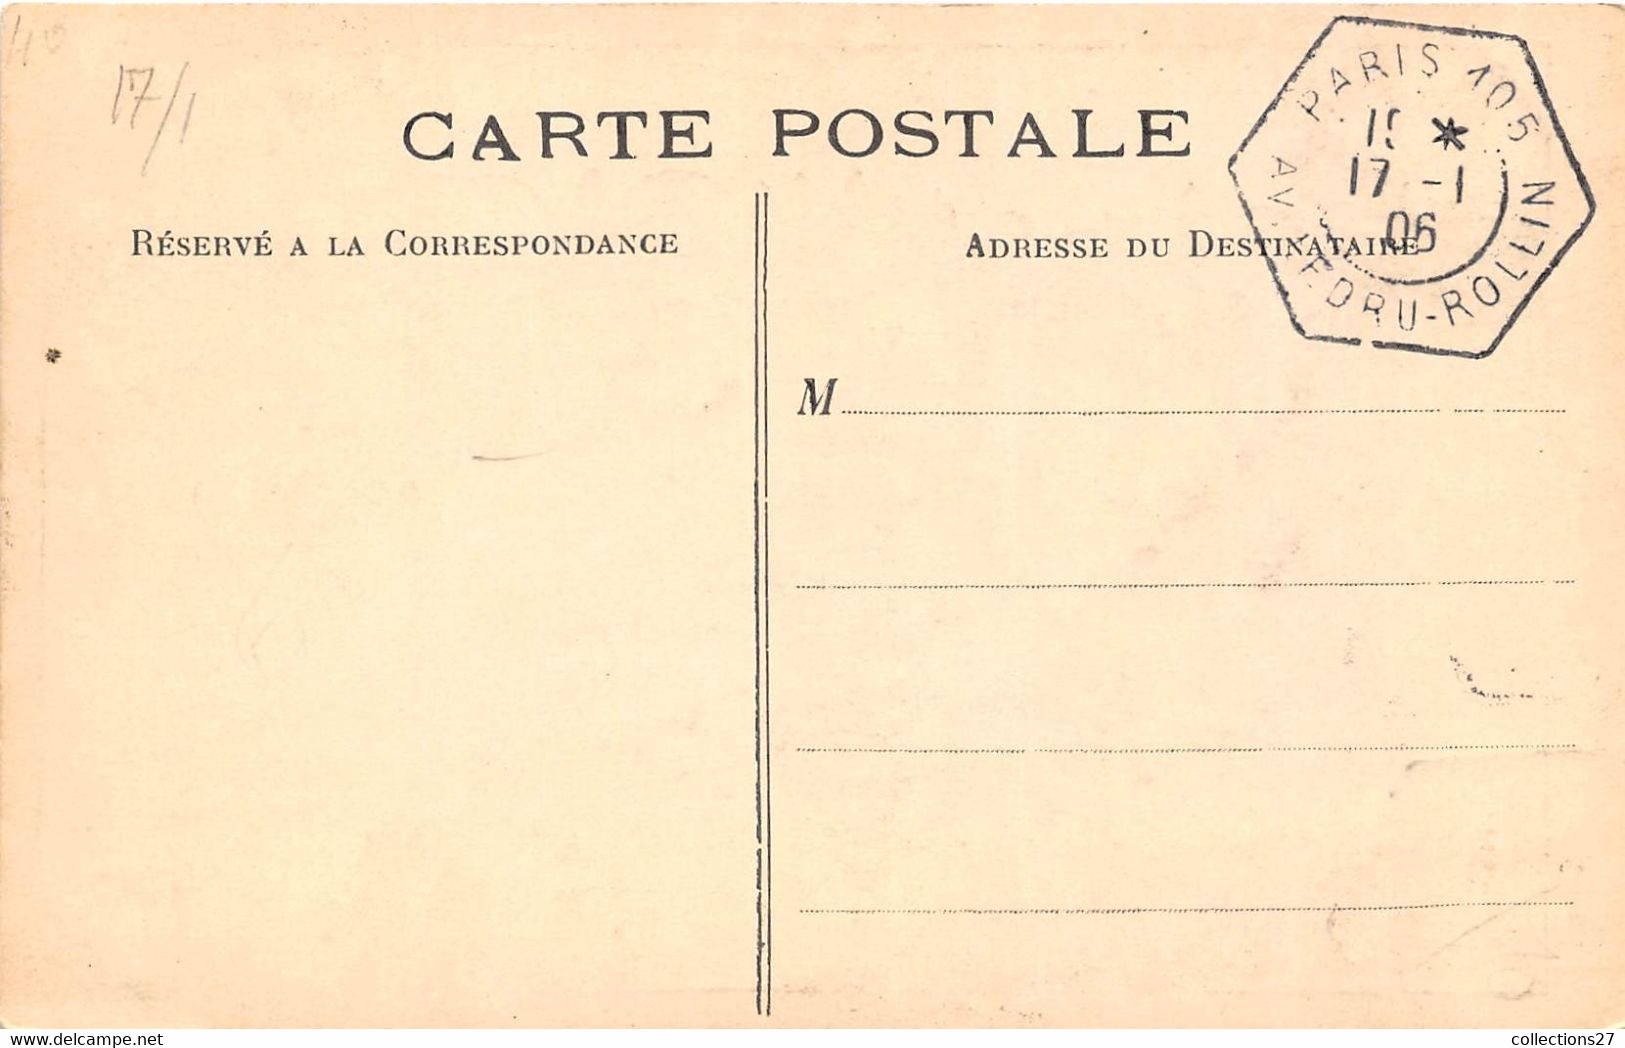 LA COURSE PRESIDENTIELLE- ELECTIONS LES 17 JANVIER 1906 - People